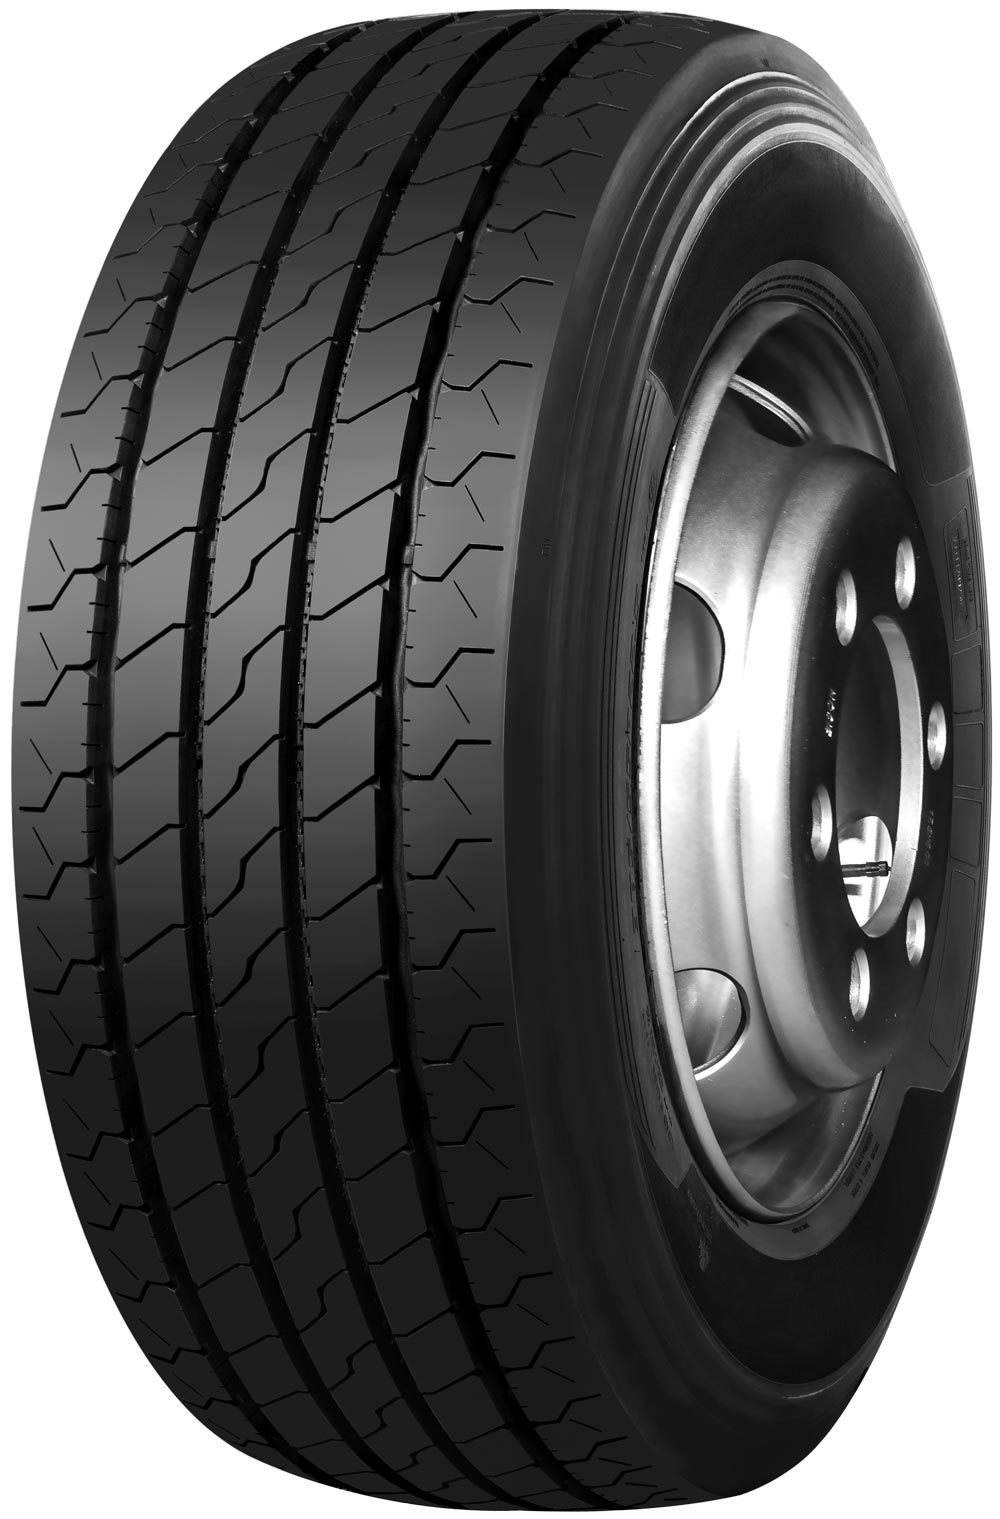 product_type-heavy_tires TRAZANO NOVO TRANS S 16 TL 245/70 R17.5 136M